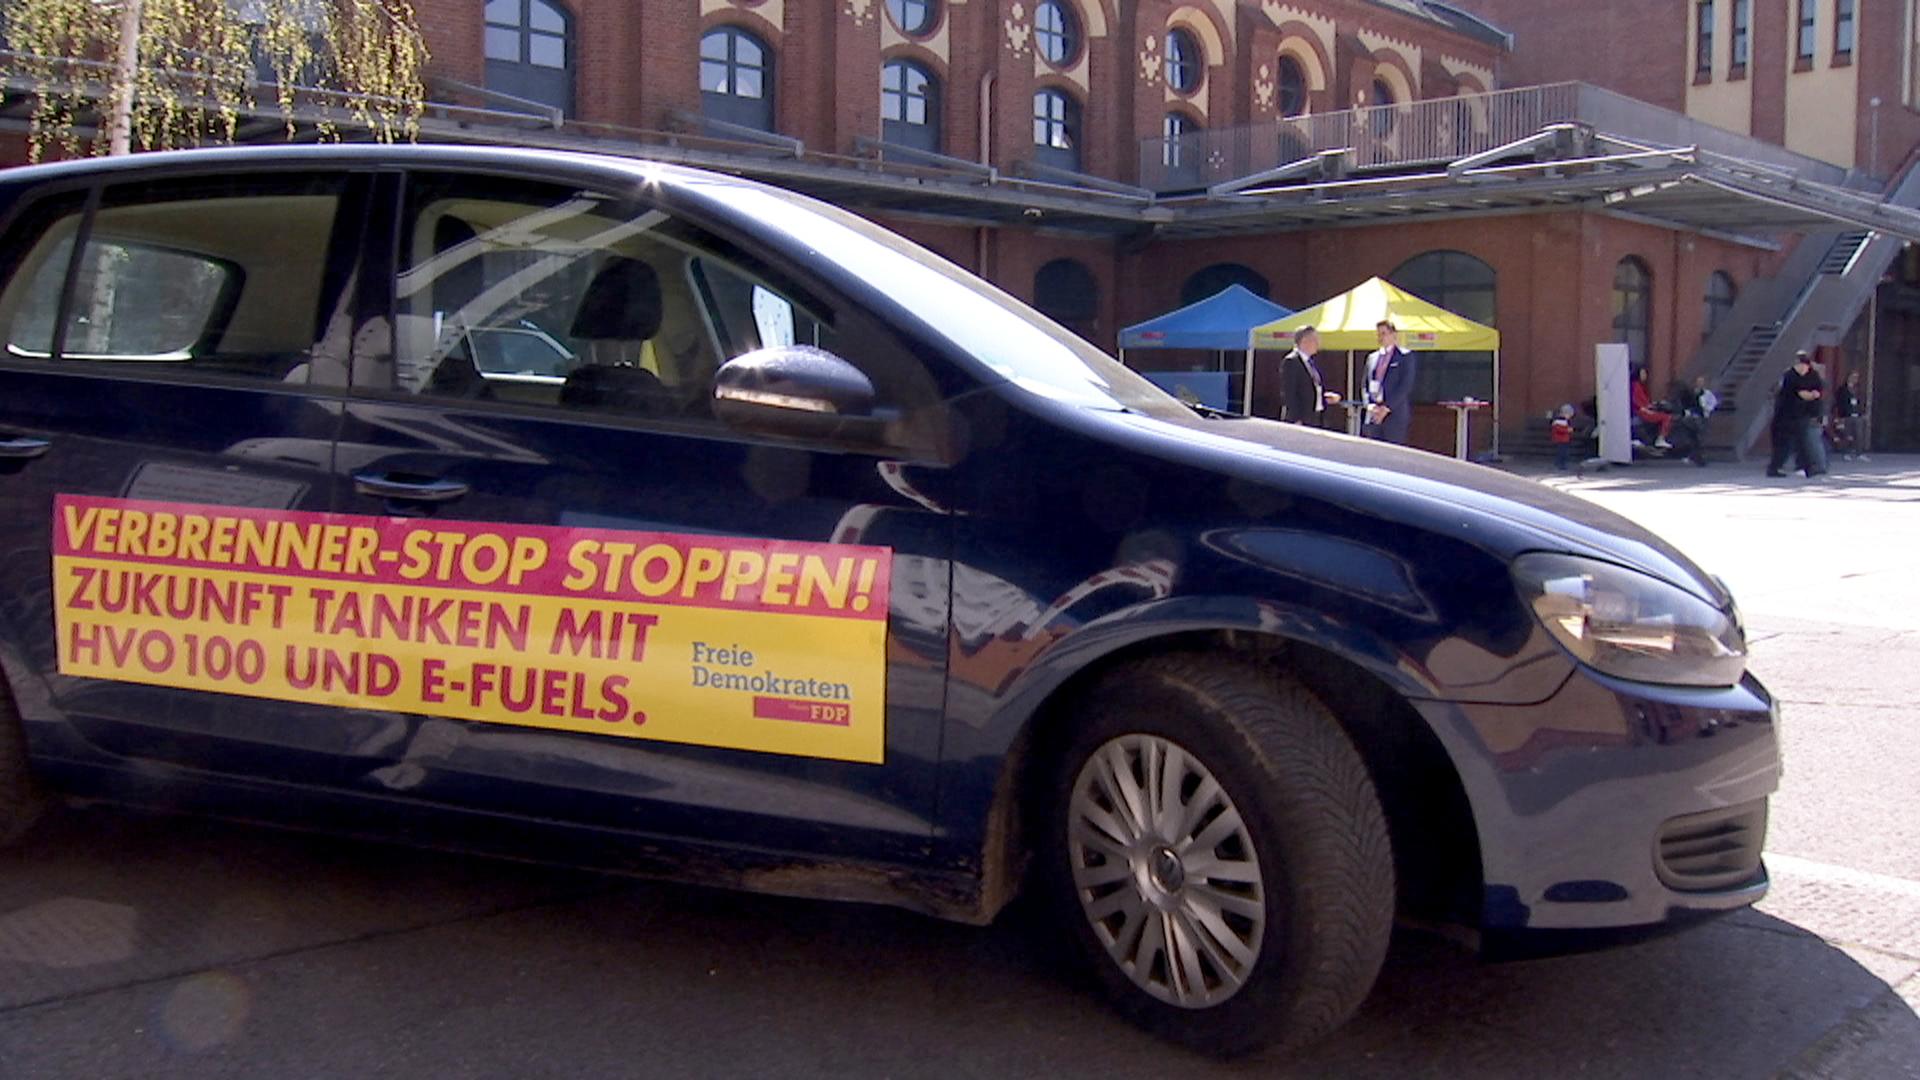 Blaue VW-Pkw mit FDP-Werbebanner auf Türen "Verbrenner-Stop stoppen! - Zukunft tanken mit HVO 100 und E-Fuels"